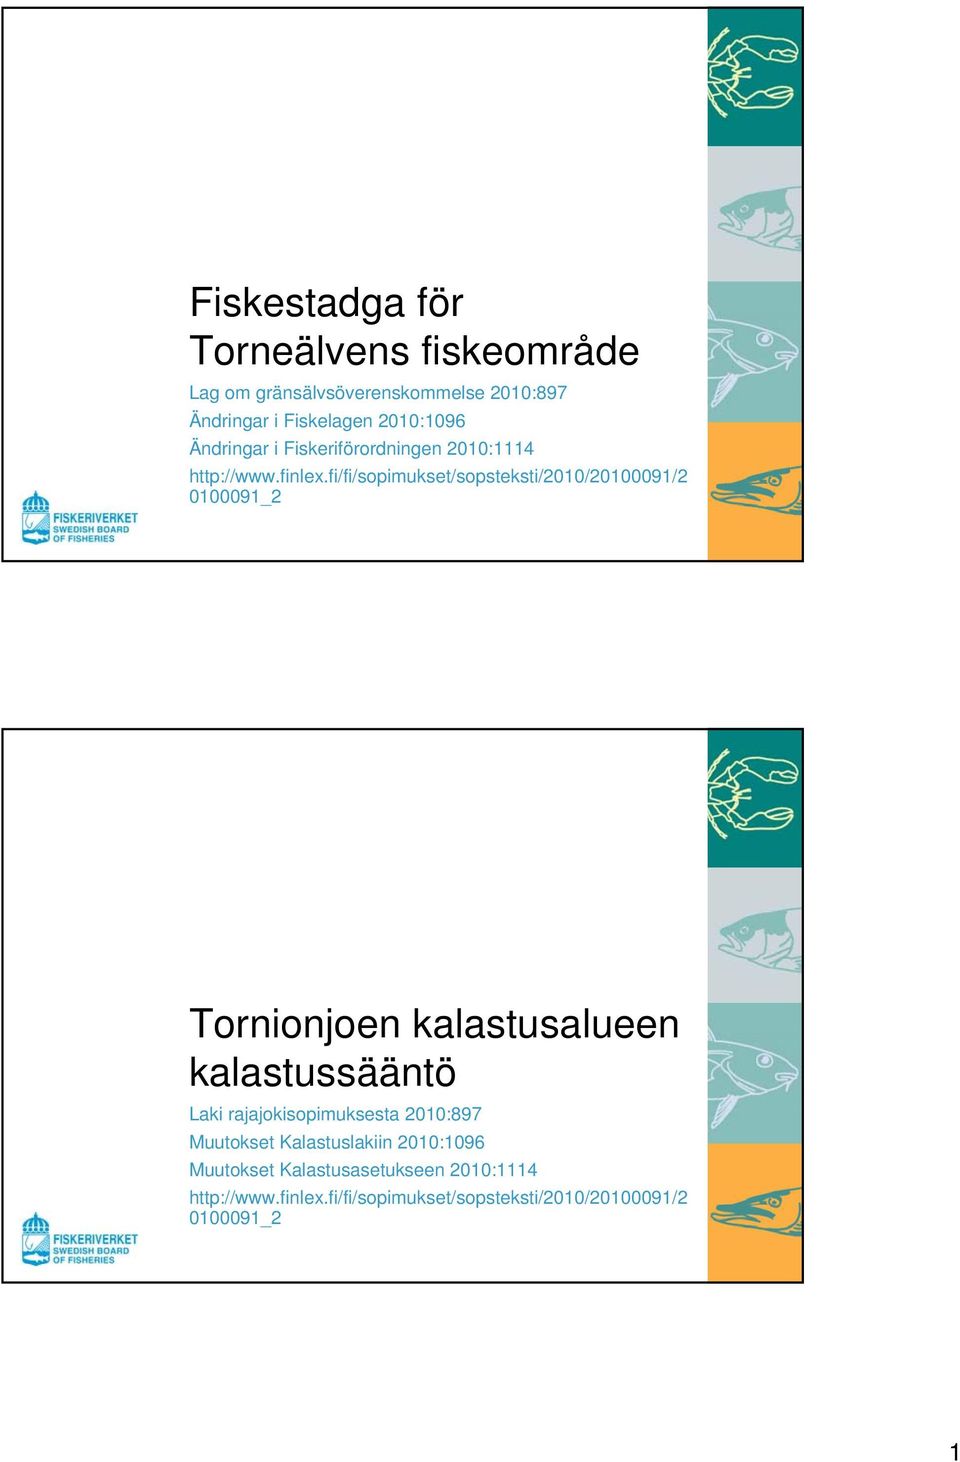 fi/fi/sopimukset/sopsteksti/2010/20100091/2 0100091_2 Tornionjoen kalastusalueen kalastussääntö Laki